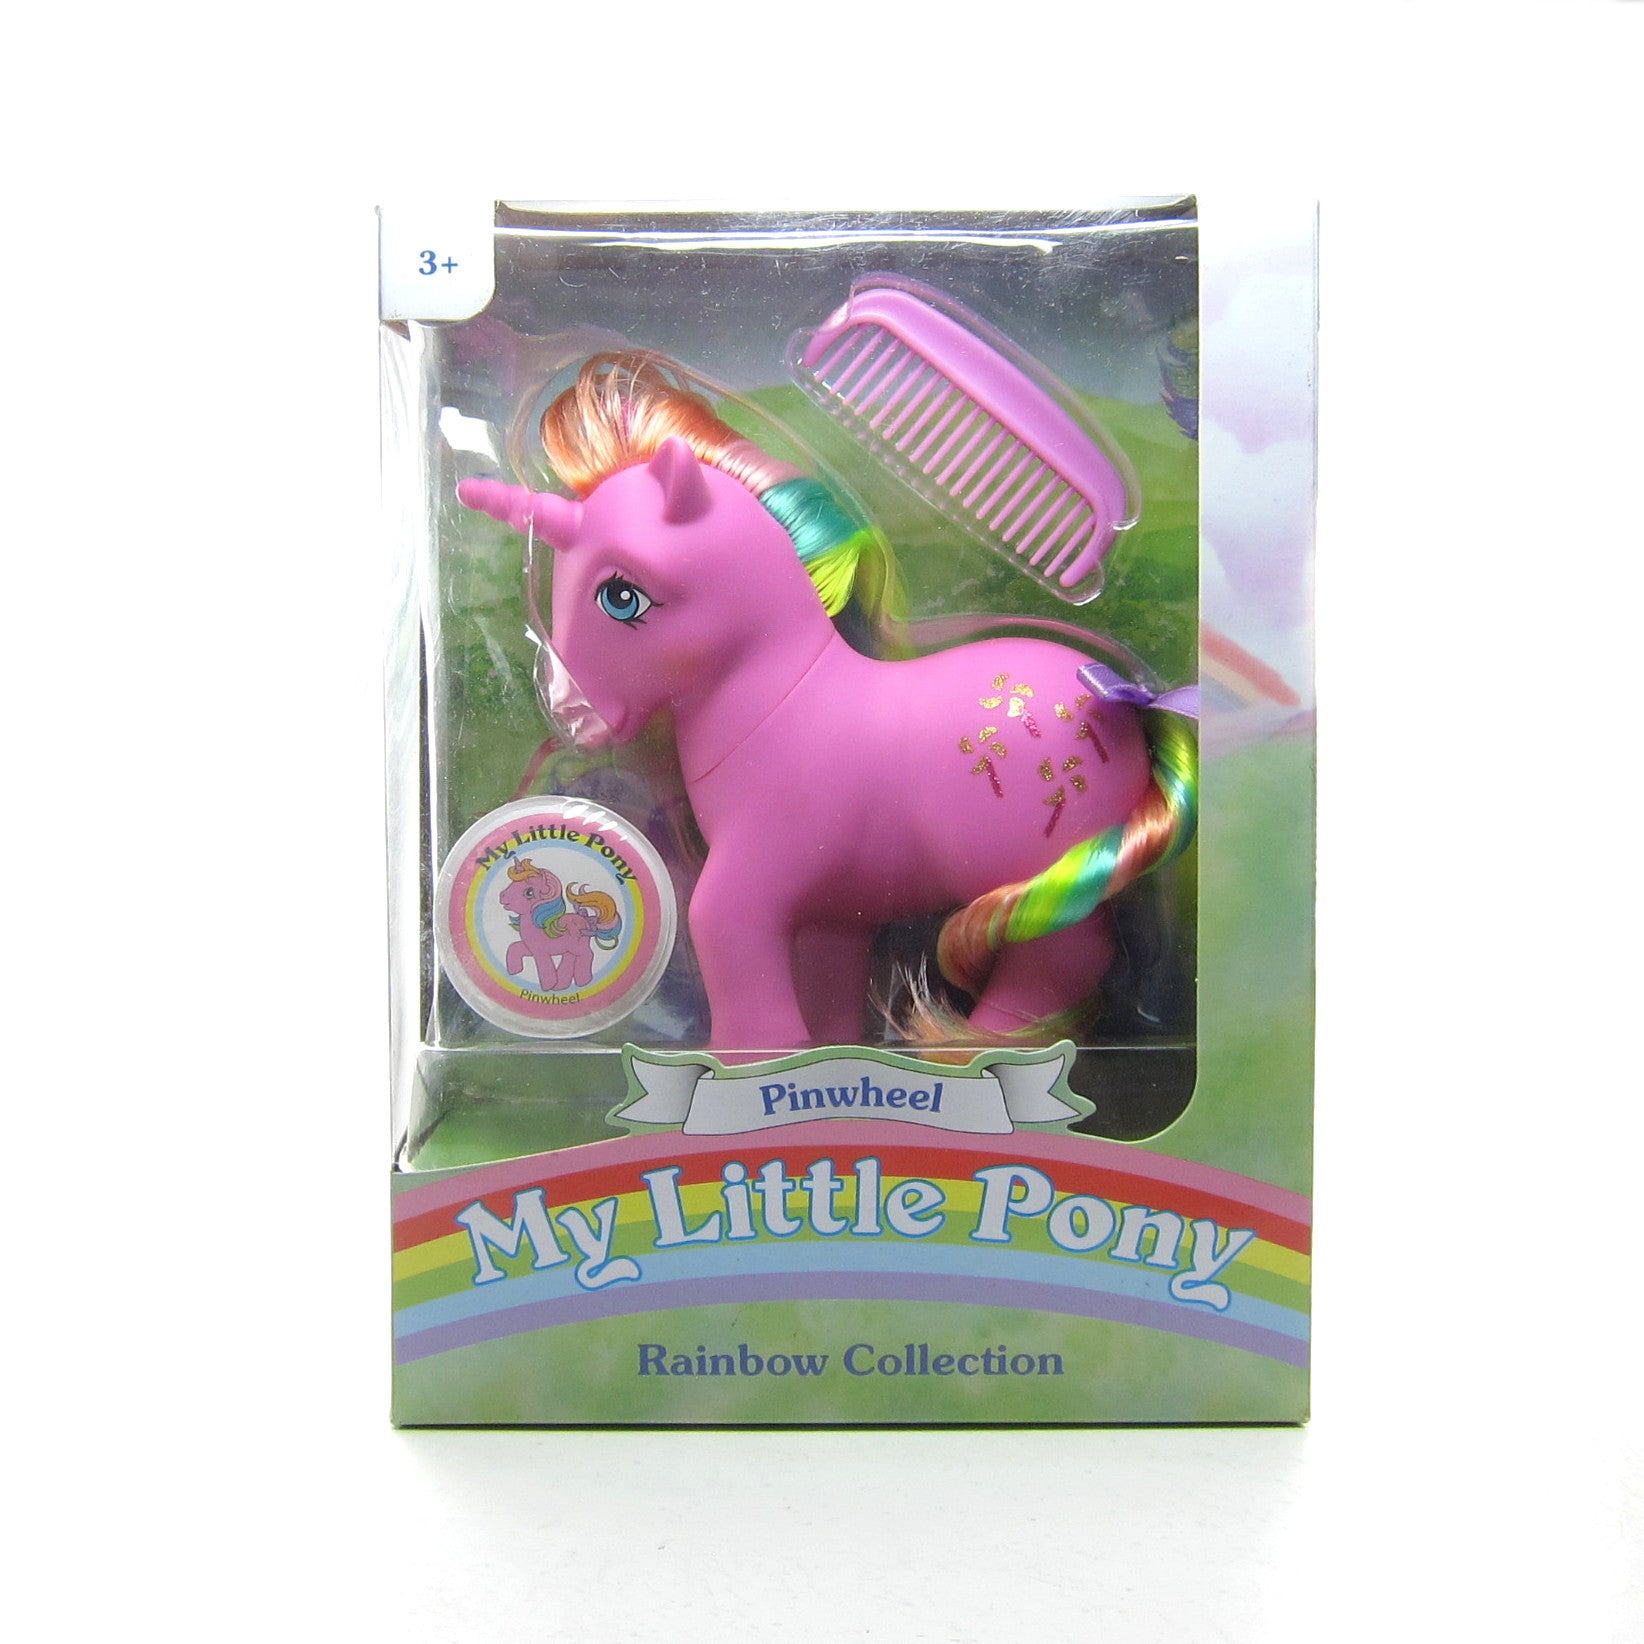 My Little Pony Pinwheel 2018 rainbow pony